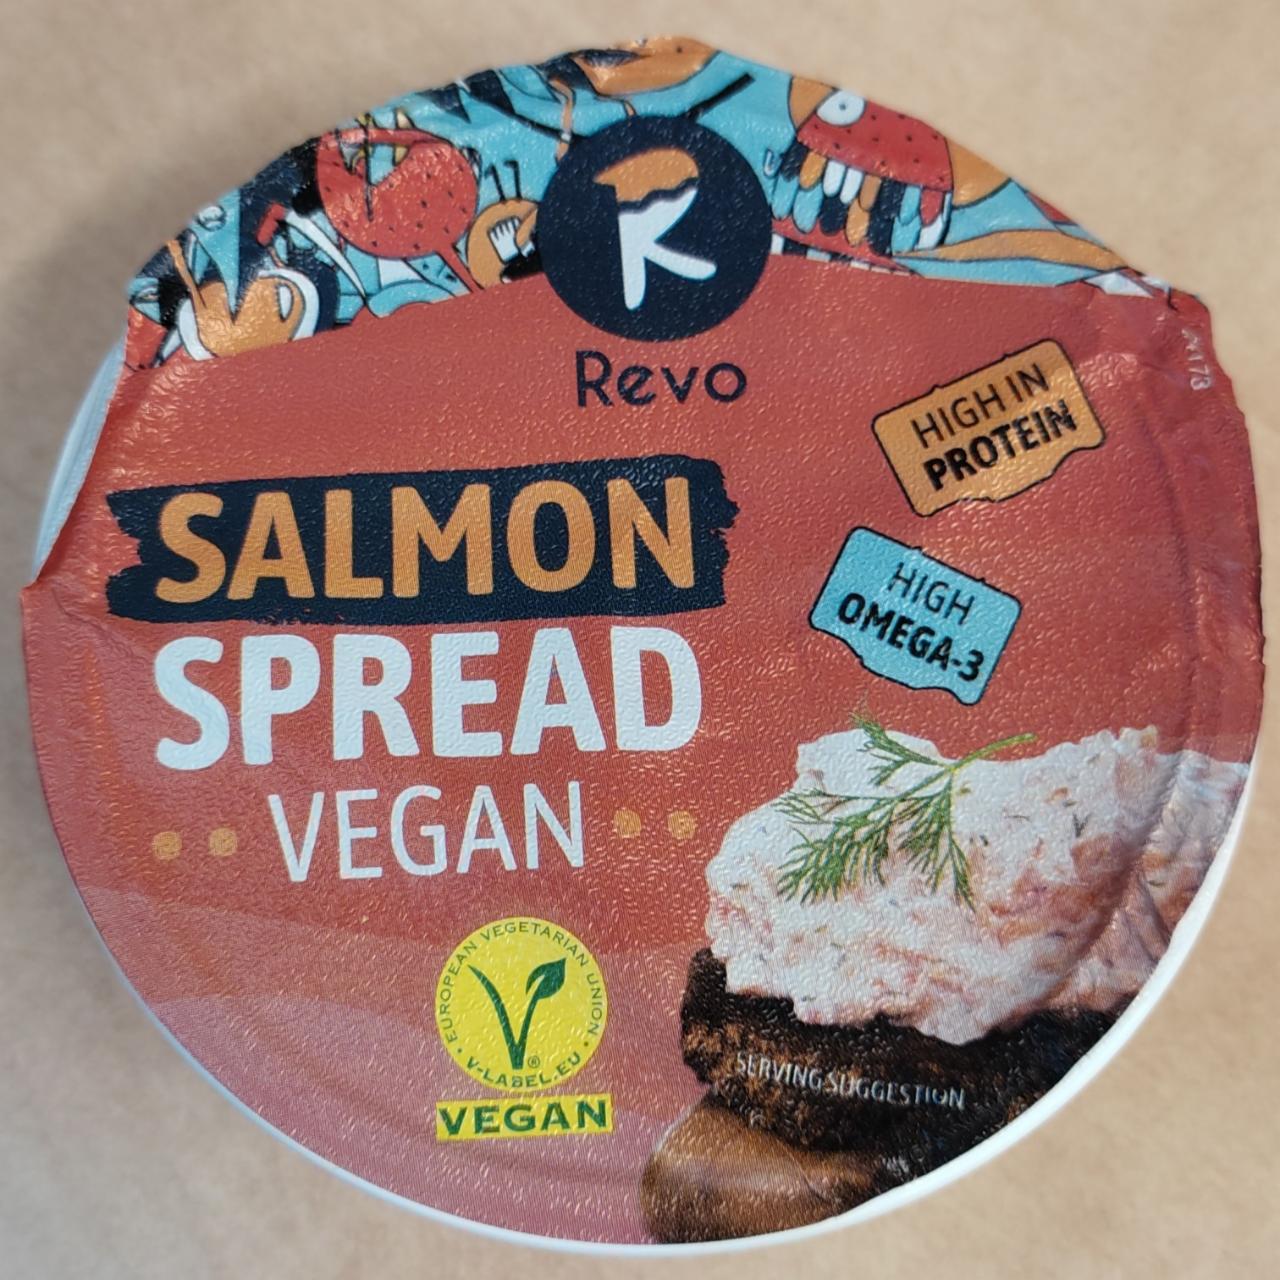 Fotografie - Salmon spread vegan Revo